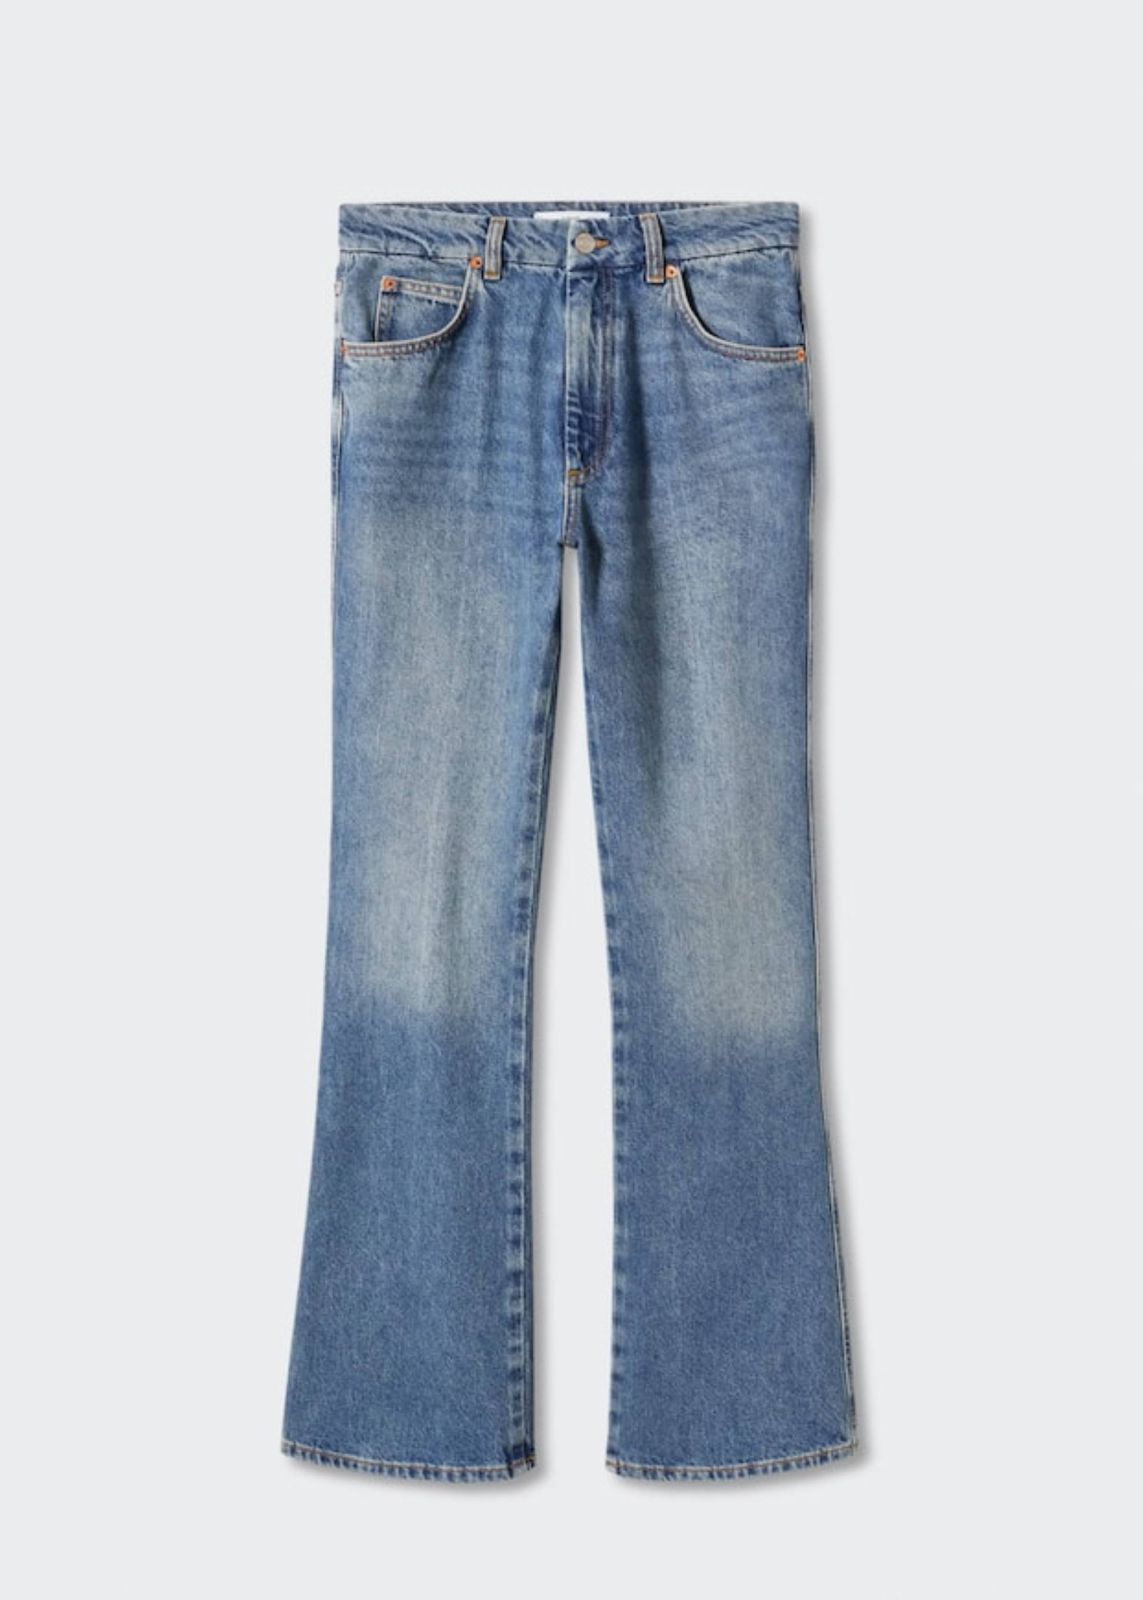  ג'ינס ארוך בגזרה מתרחבת DANA של MANGO